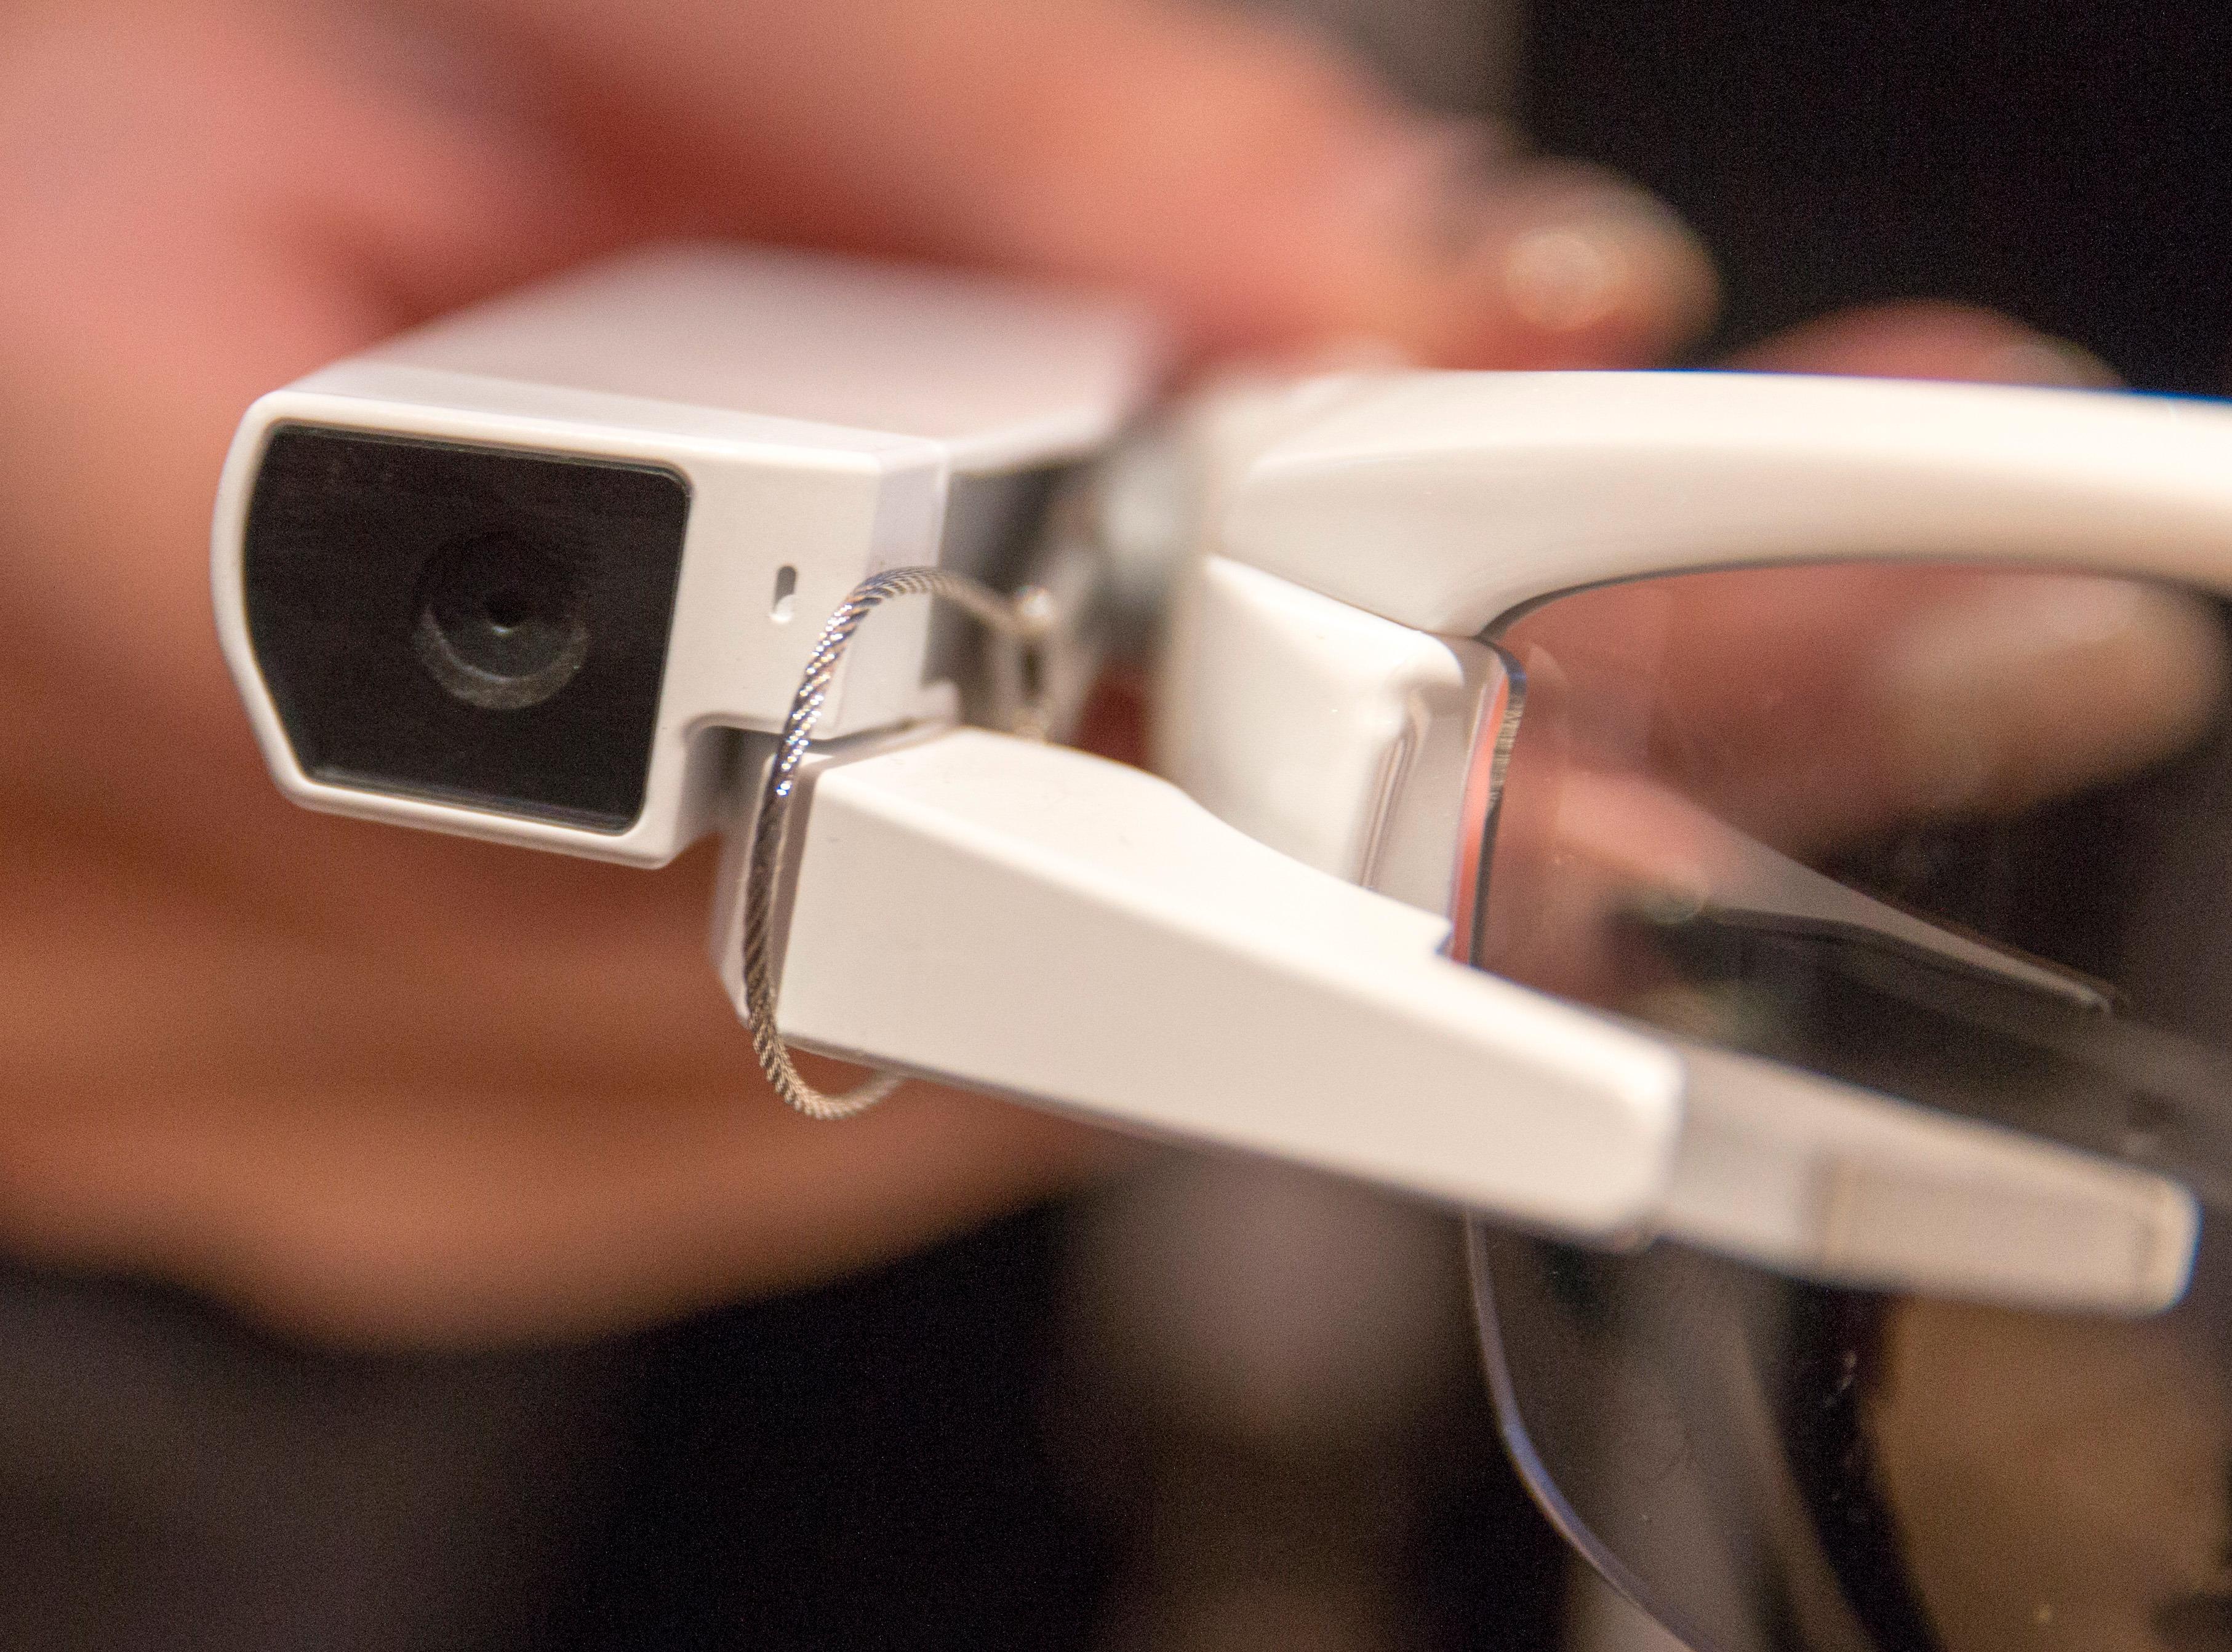 Det sitter fast et kamera i front på Sonys smartbriller.Foto: Finn Jarle Kvalheim, Tek.no